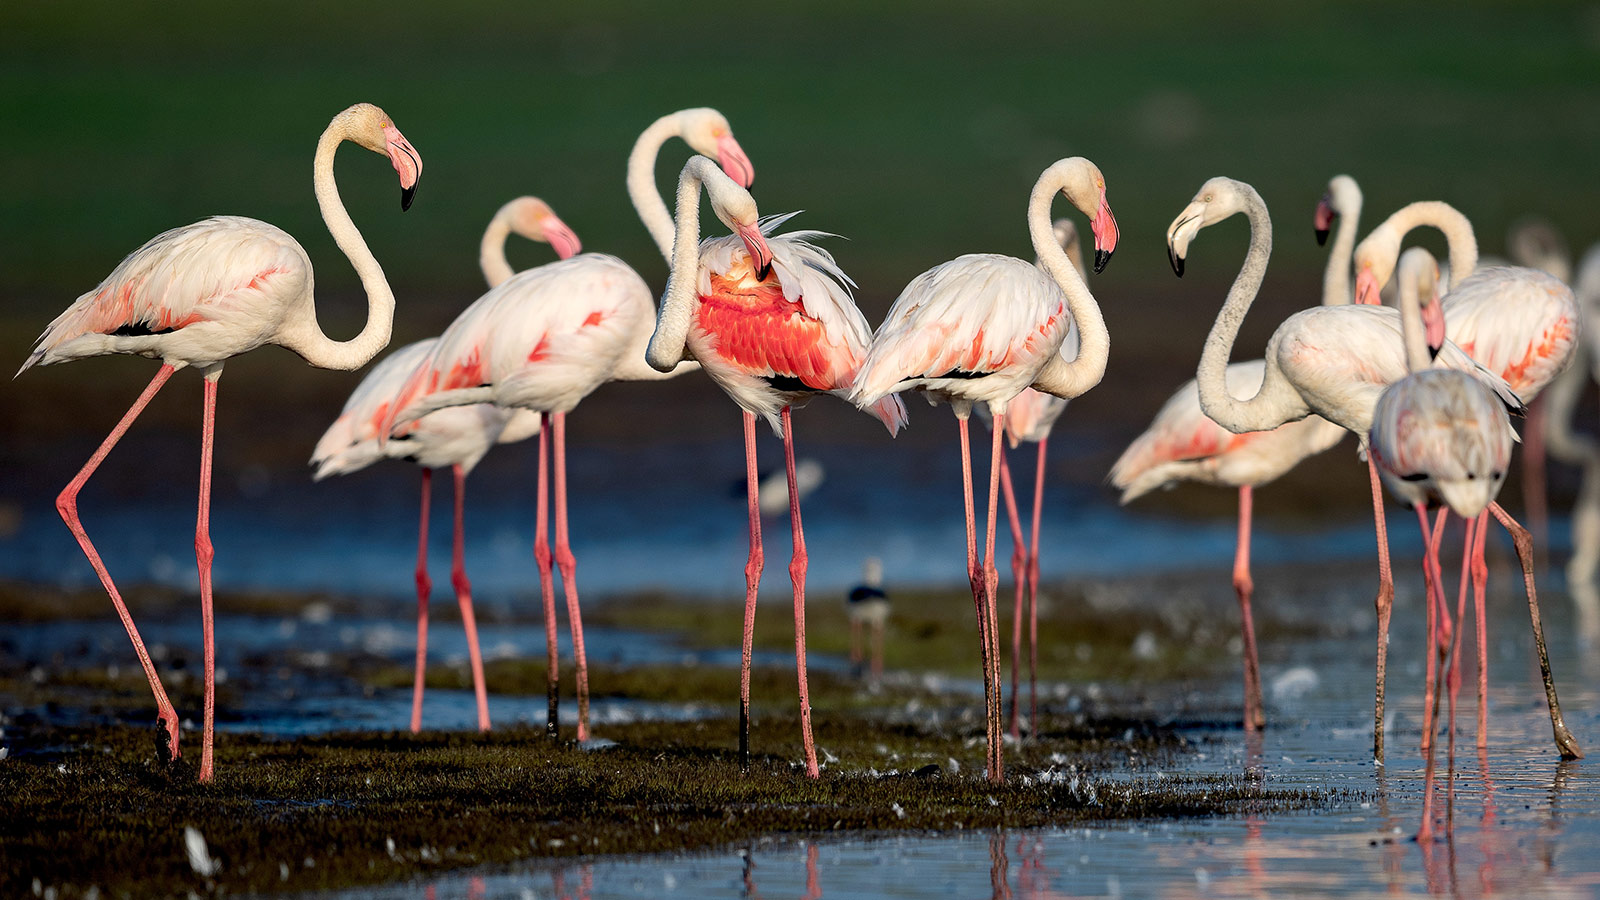 İçinde 200’den fazla su kuşunun yaşadığı bir tabiat cenneti olan Kuş cenneti, tepeli pelikanlar, pembe kanatlı flamingolar, gri ve siyah leylekler gibi onlarca az görülen kuşa ev sahipliği yapıyor. Bu kuşların dışında göç dönemlerinde 50.000’den fazla göçmen kuşa da ev sahipliği yapan yer İzmirliler tarafından yoğun ilgi görmekte.